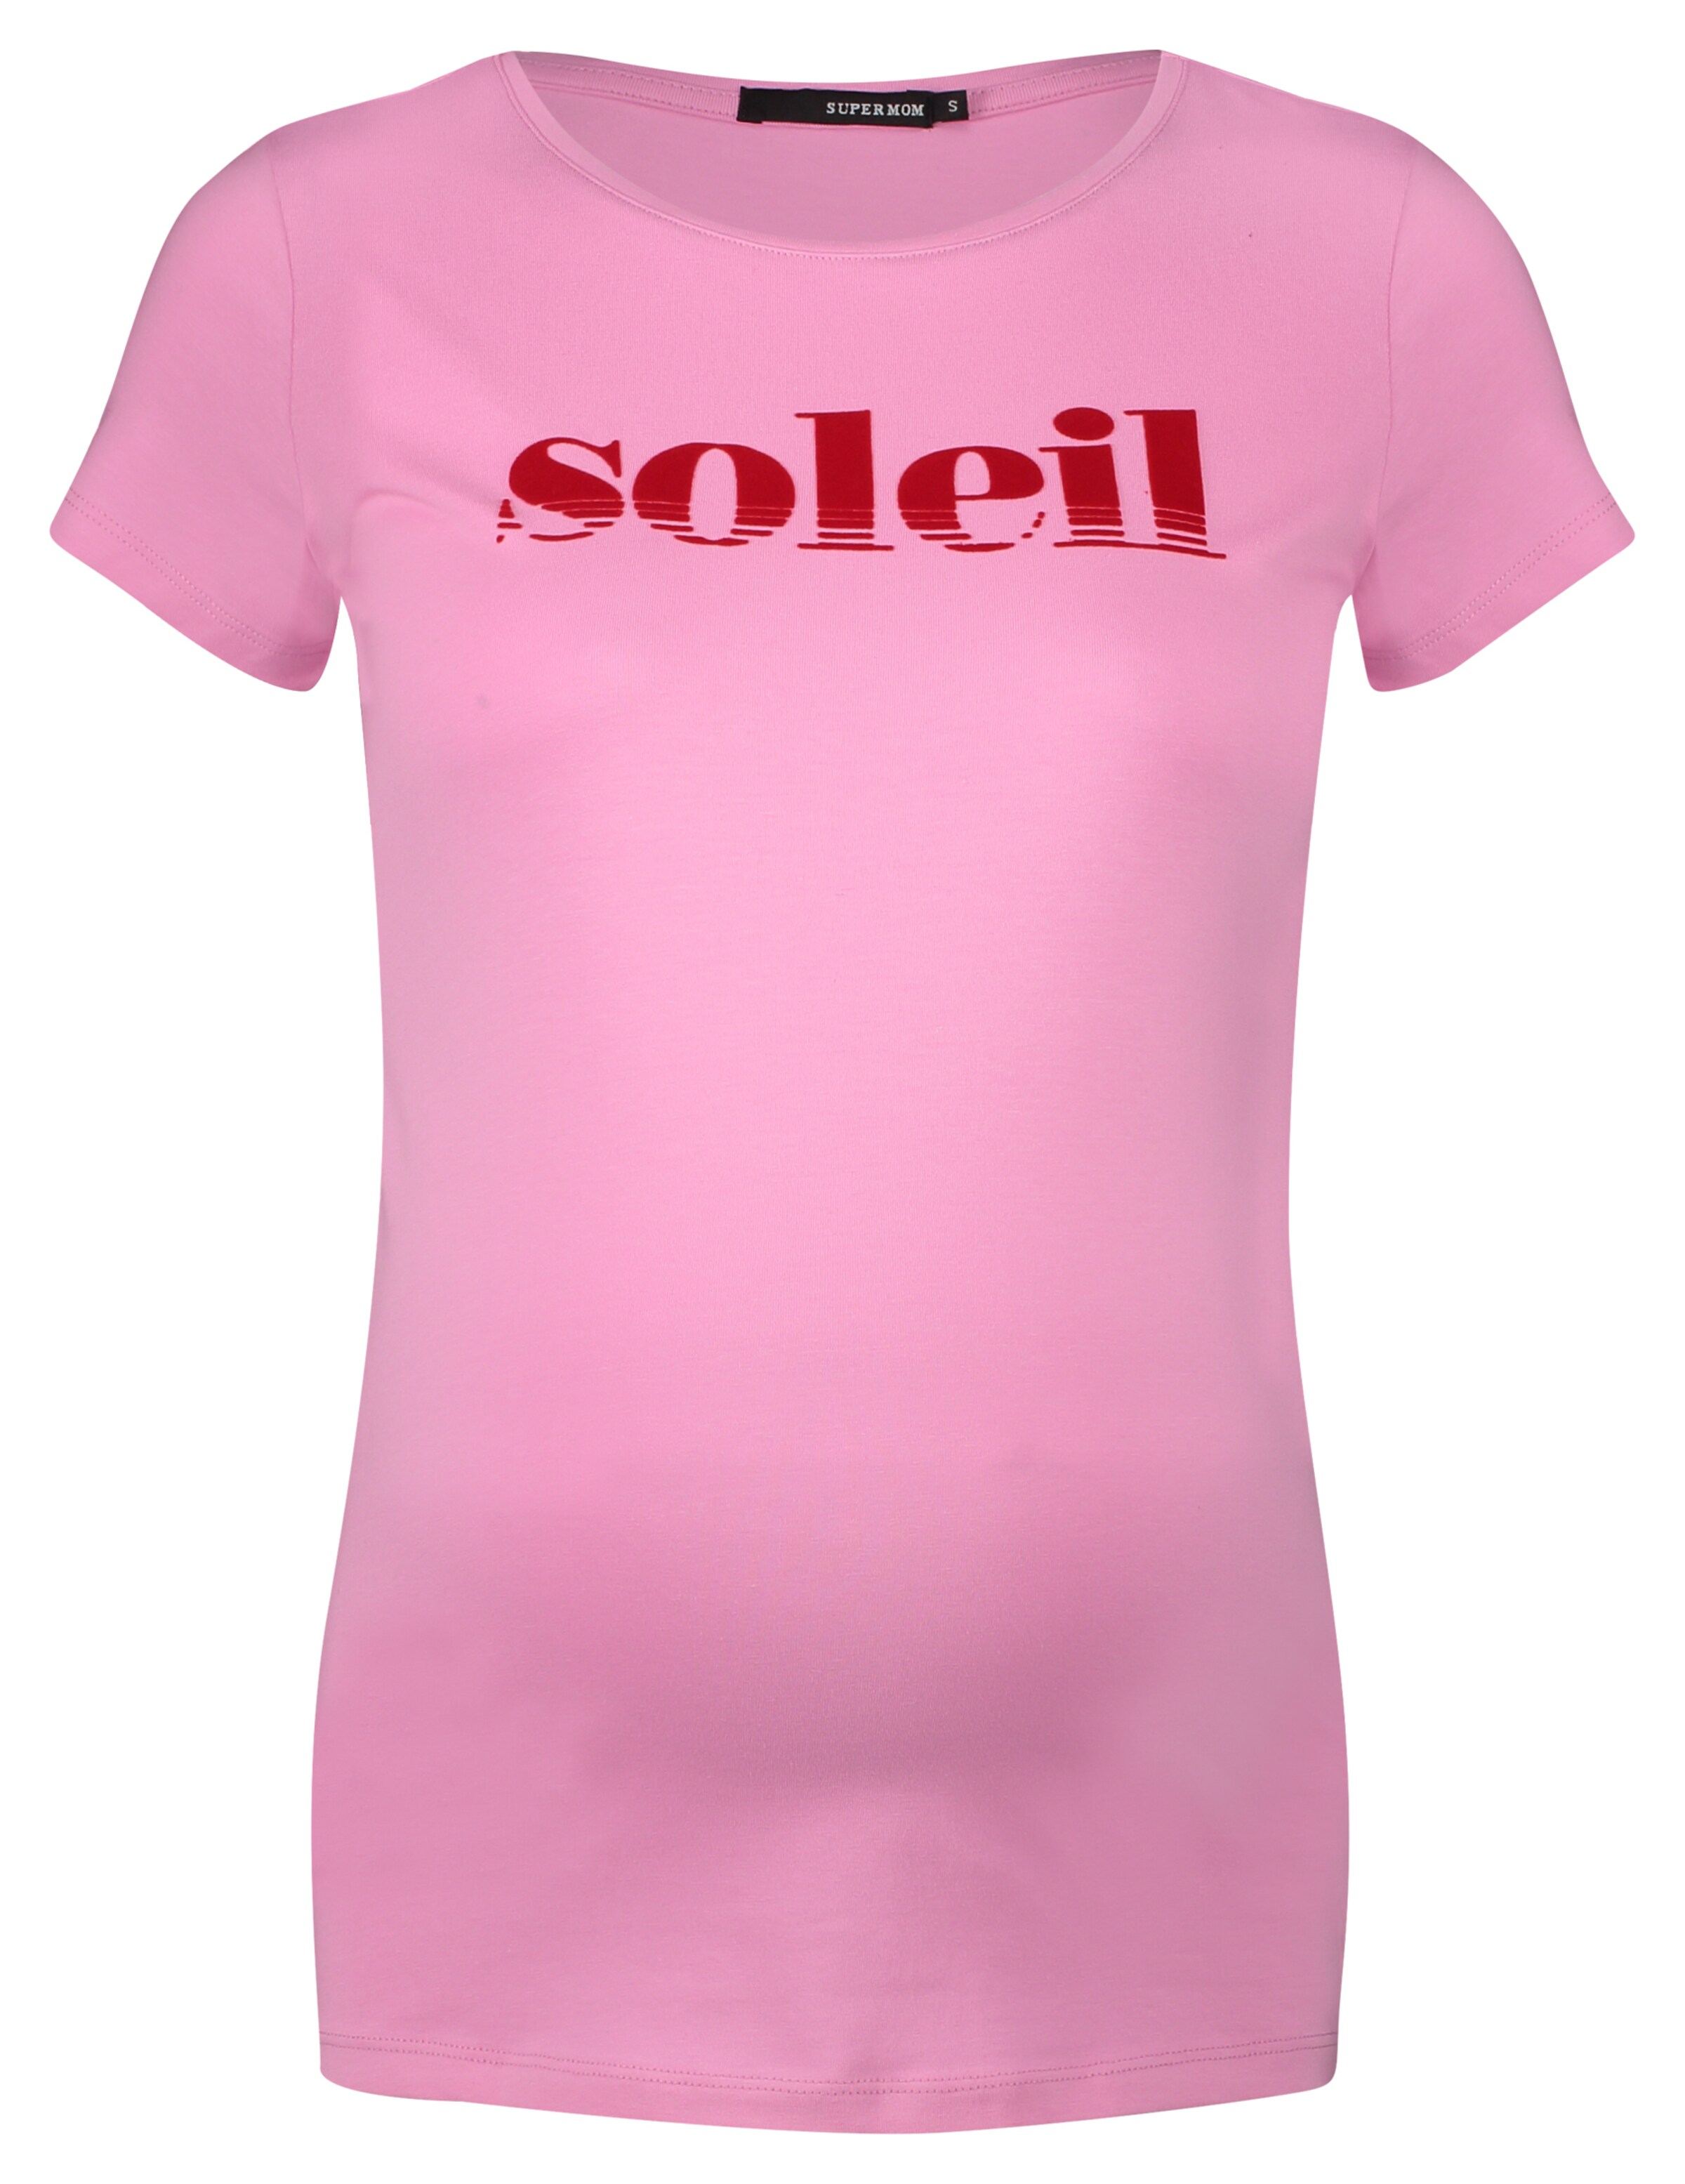 Supermom Shirt Soleil in Pink 